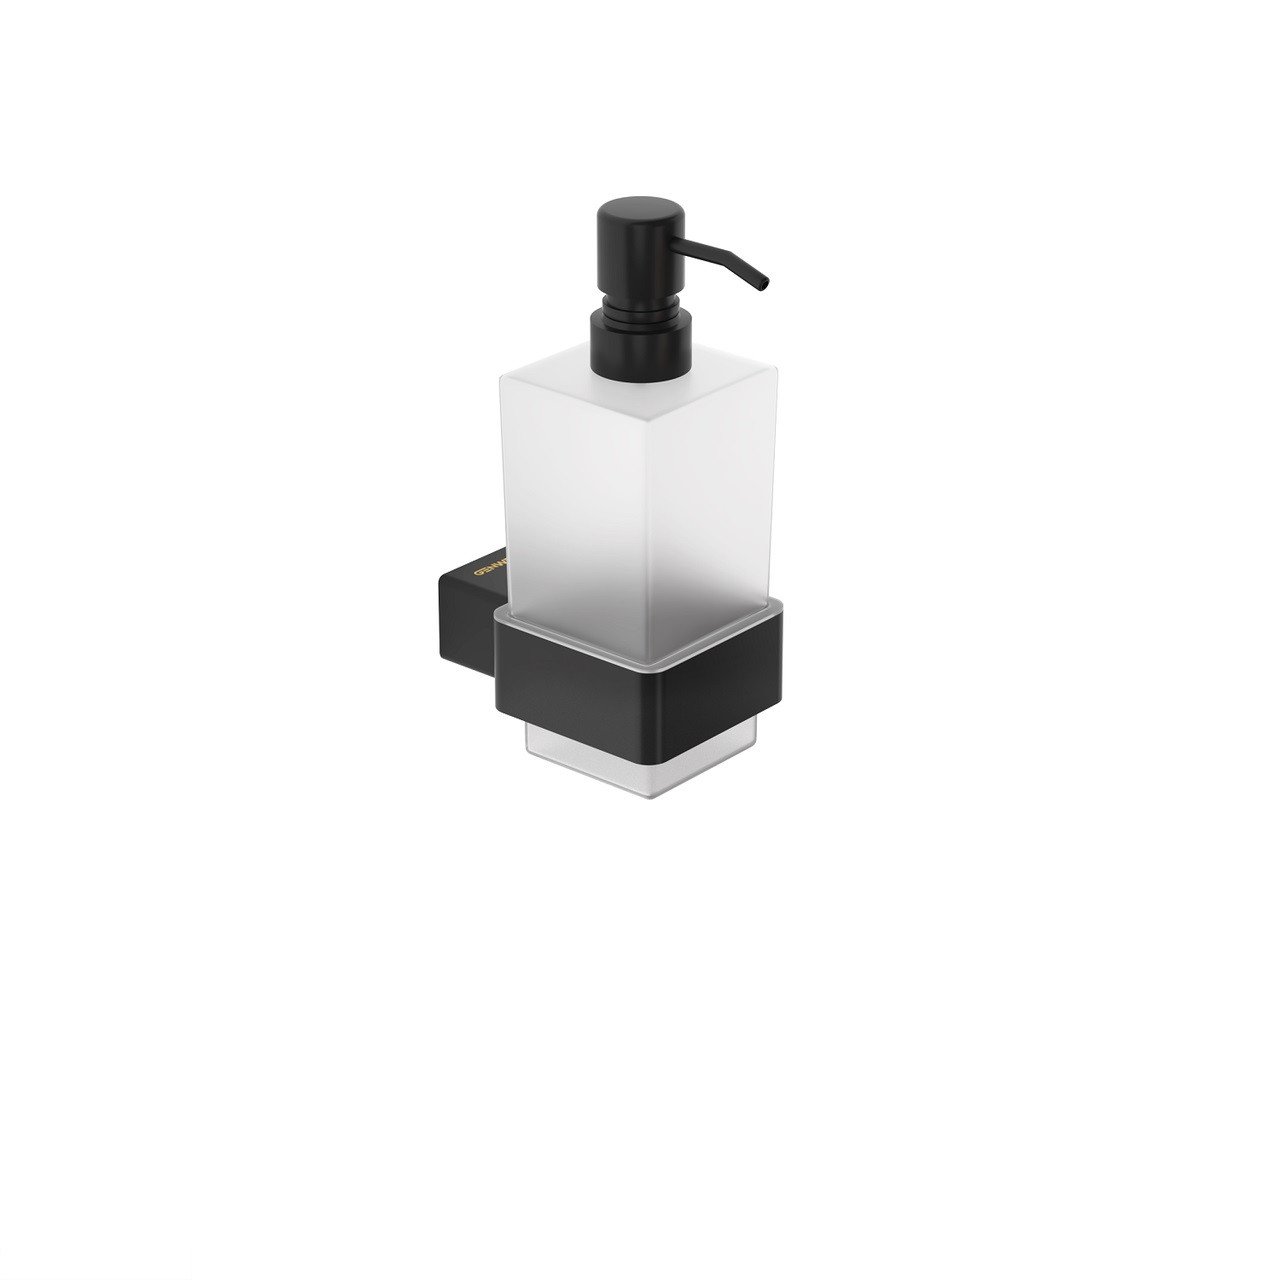 Дозатор жидкого мыла, Genwec GW05 59 04 03 Pompei нержавеющая сталь, стекло сатин / черный мат.